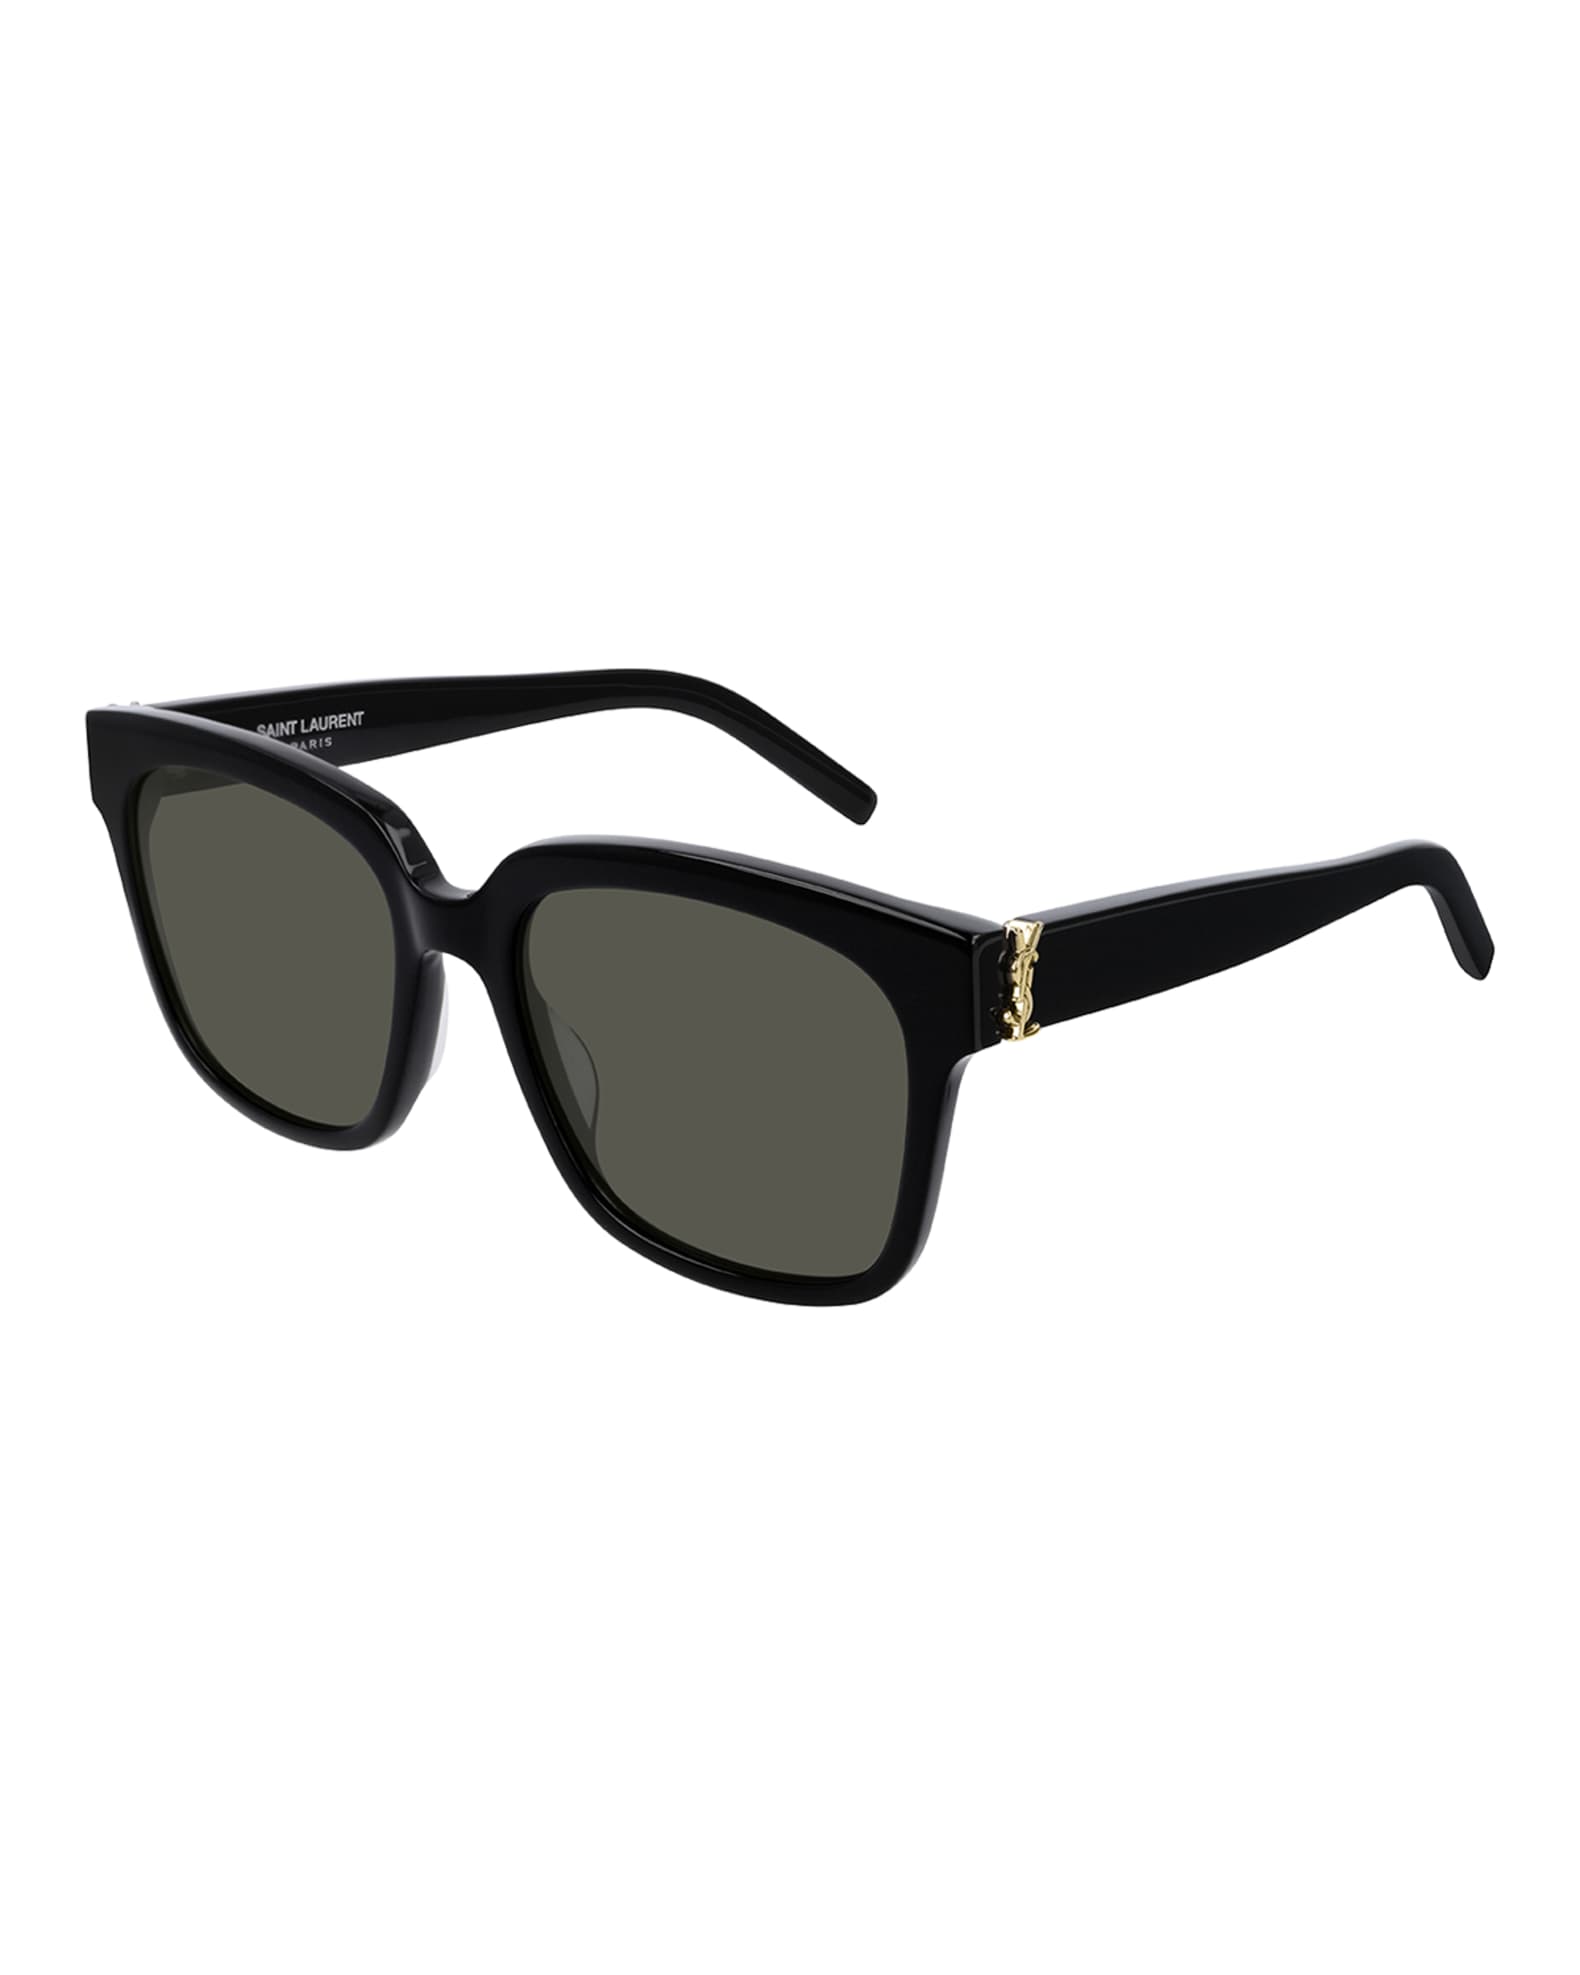 Saint Laurent Square YSL Acetate Sunglasses | Neiman Marcus